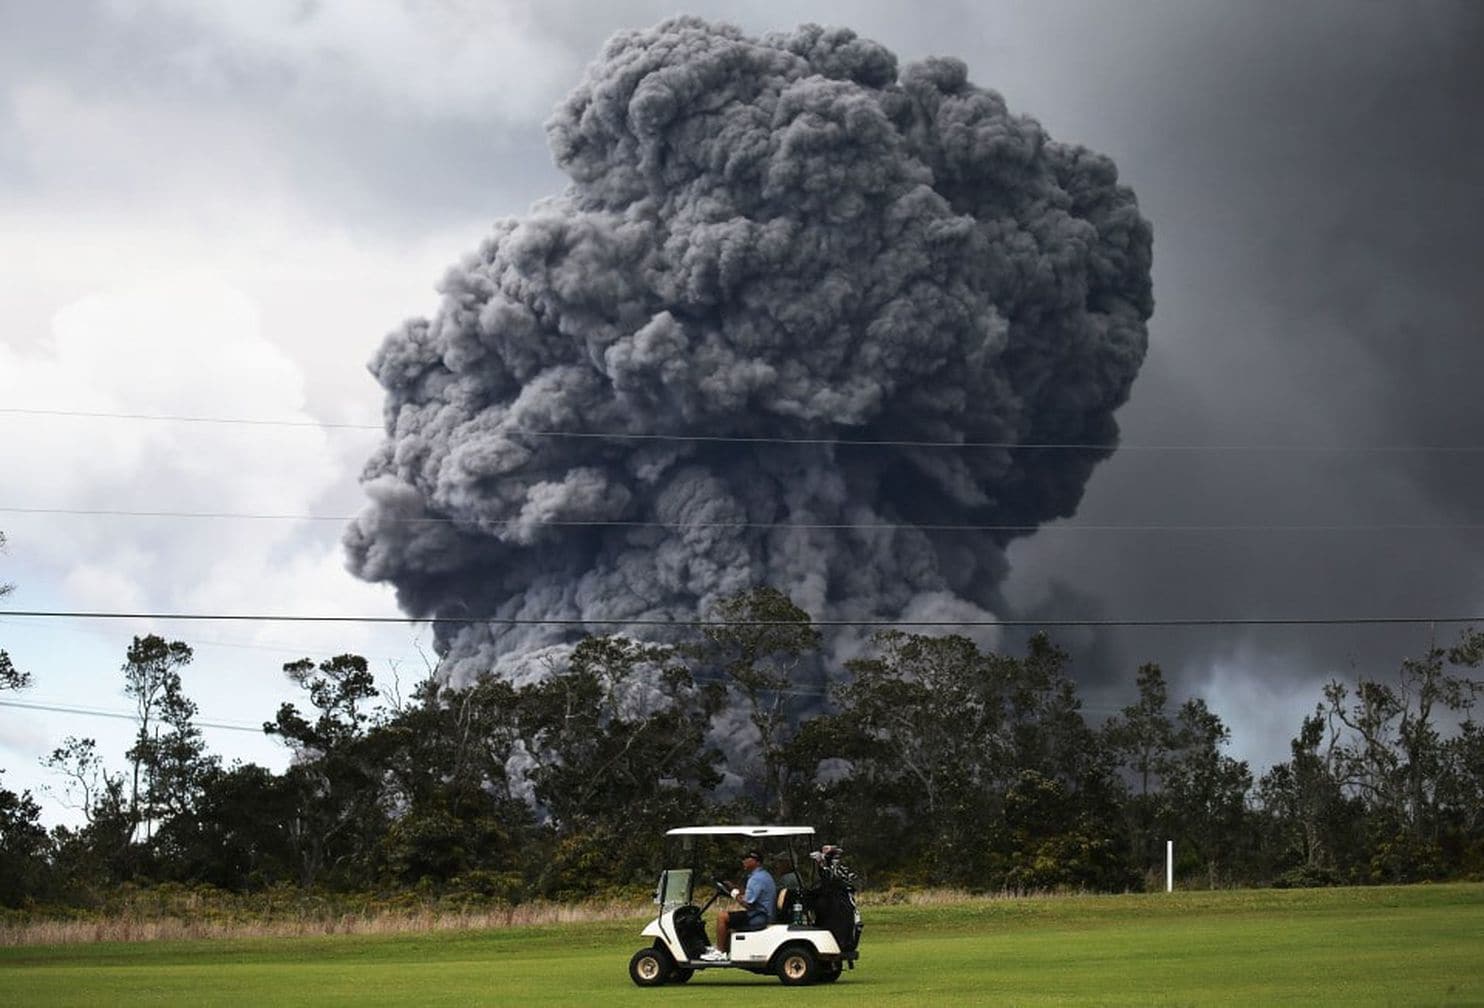 Golfer mạo hiểm chơi golf khi núi lửa Kilauea đang phun trào